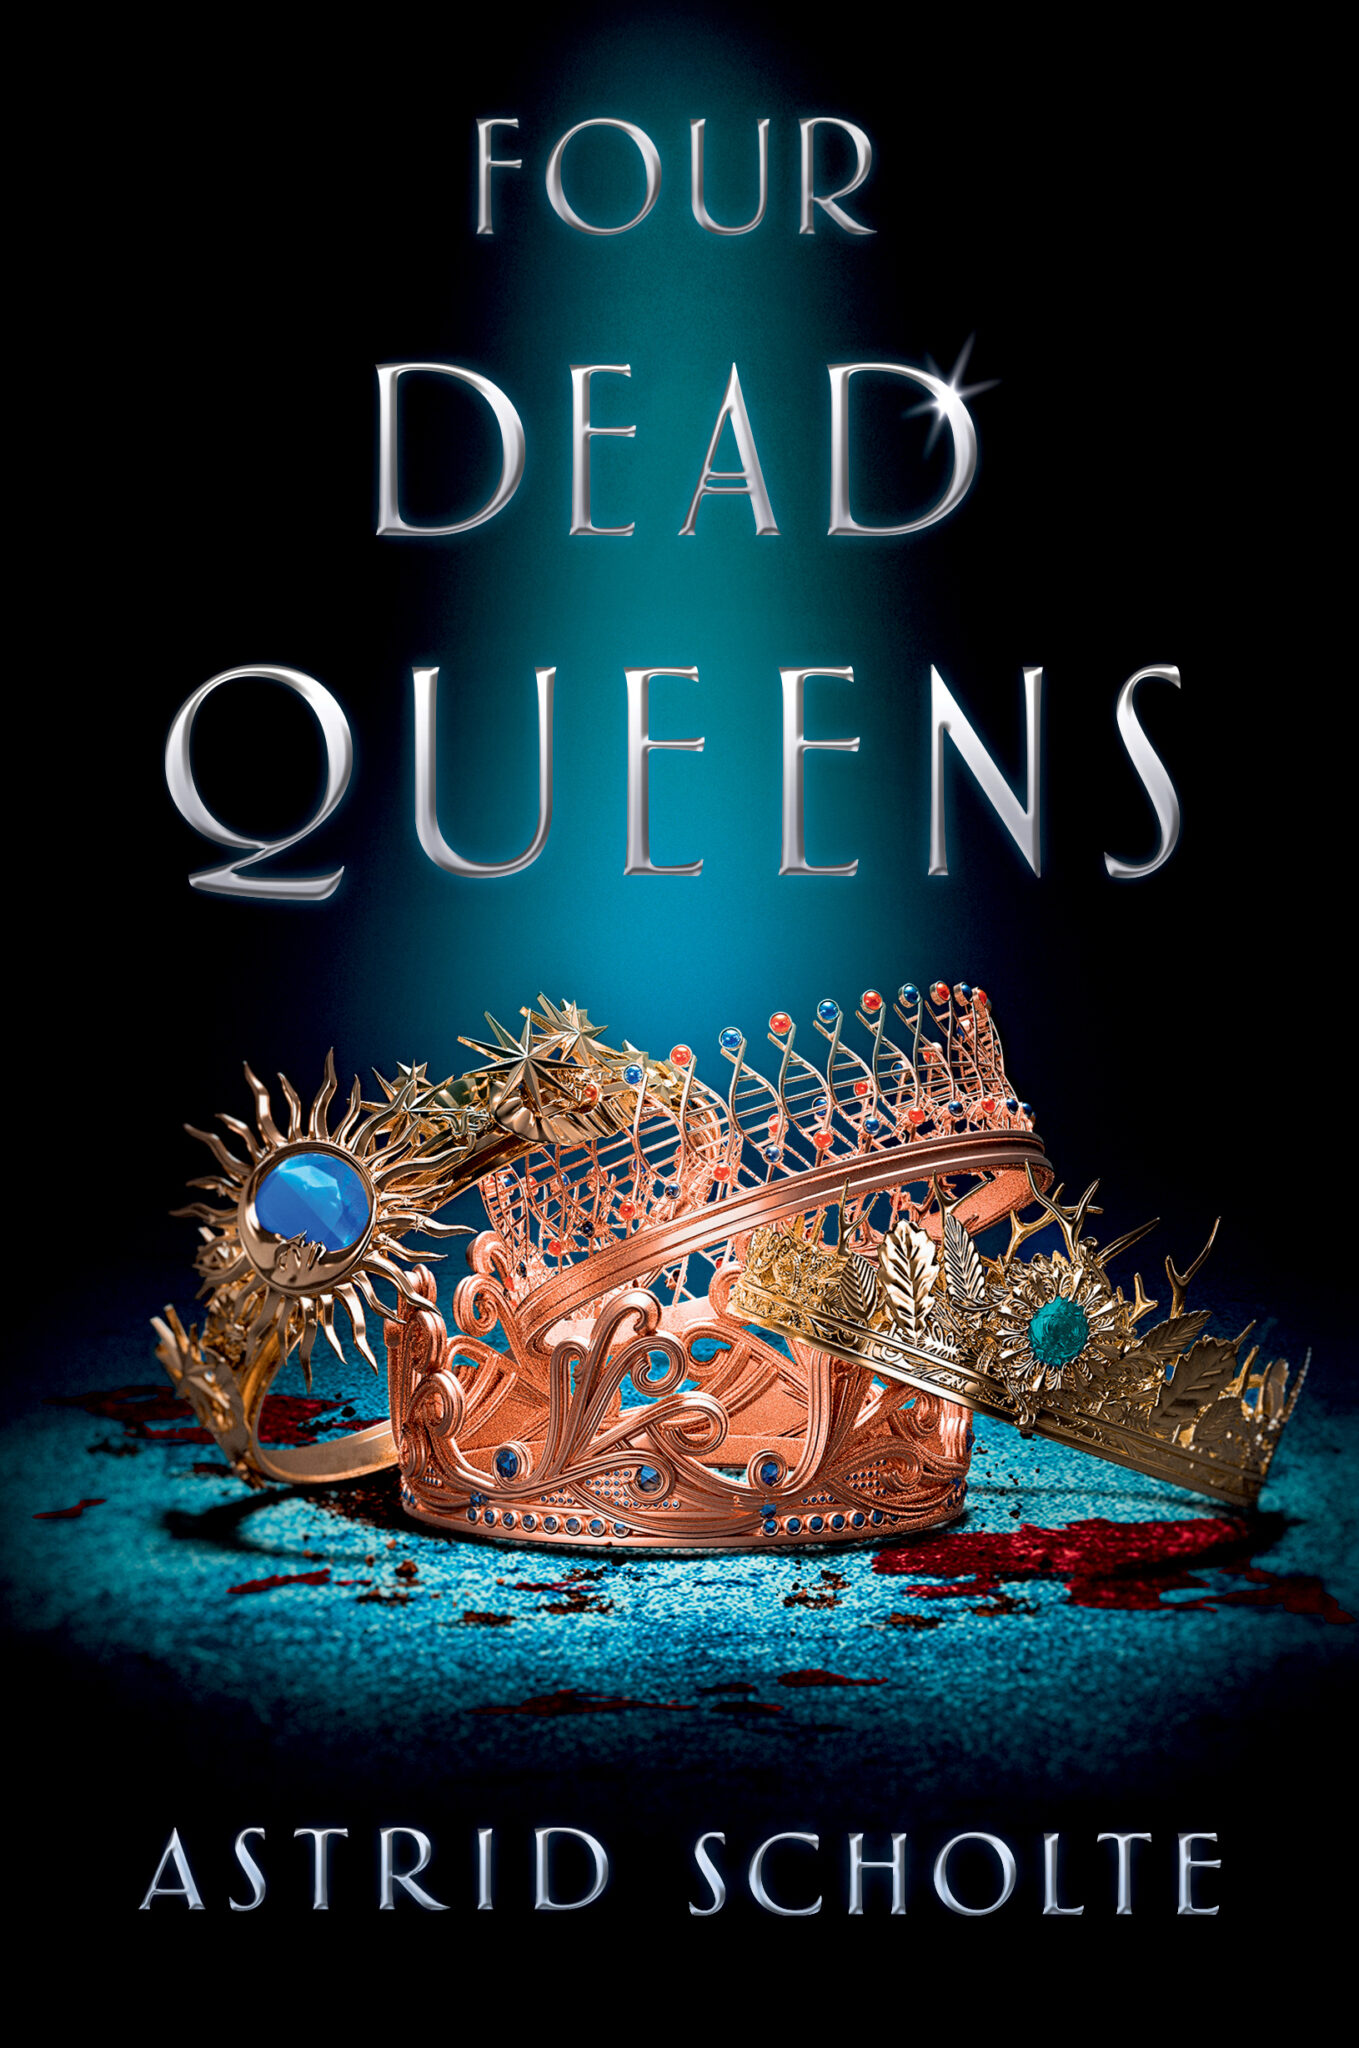 4 dead queens book